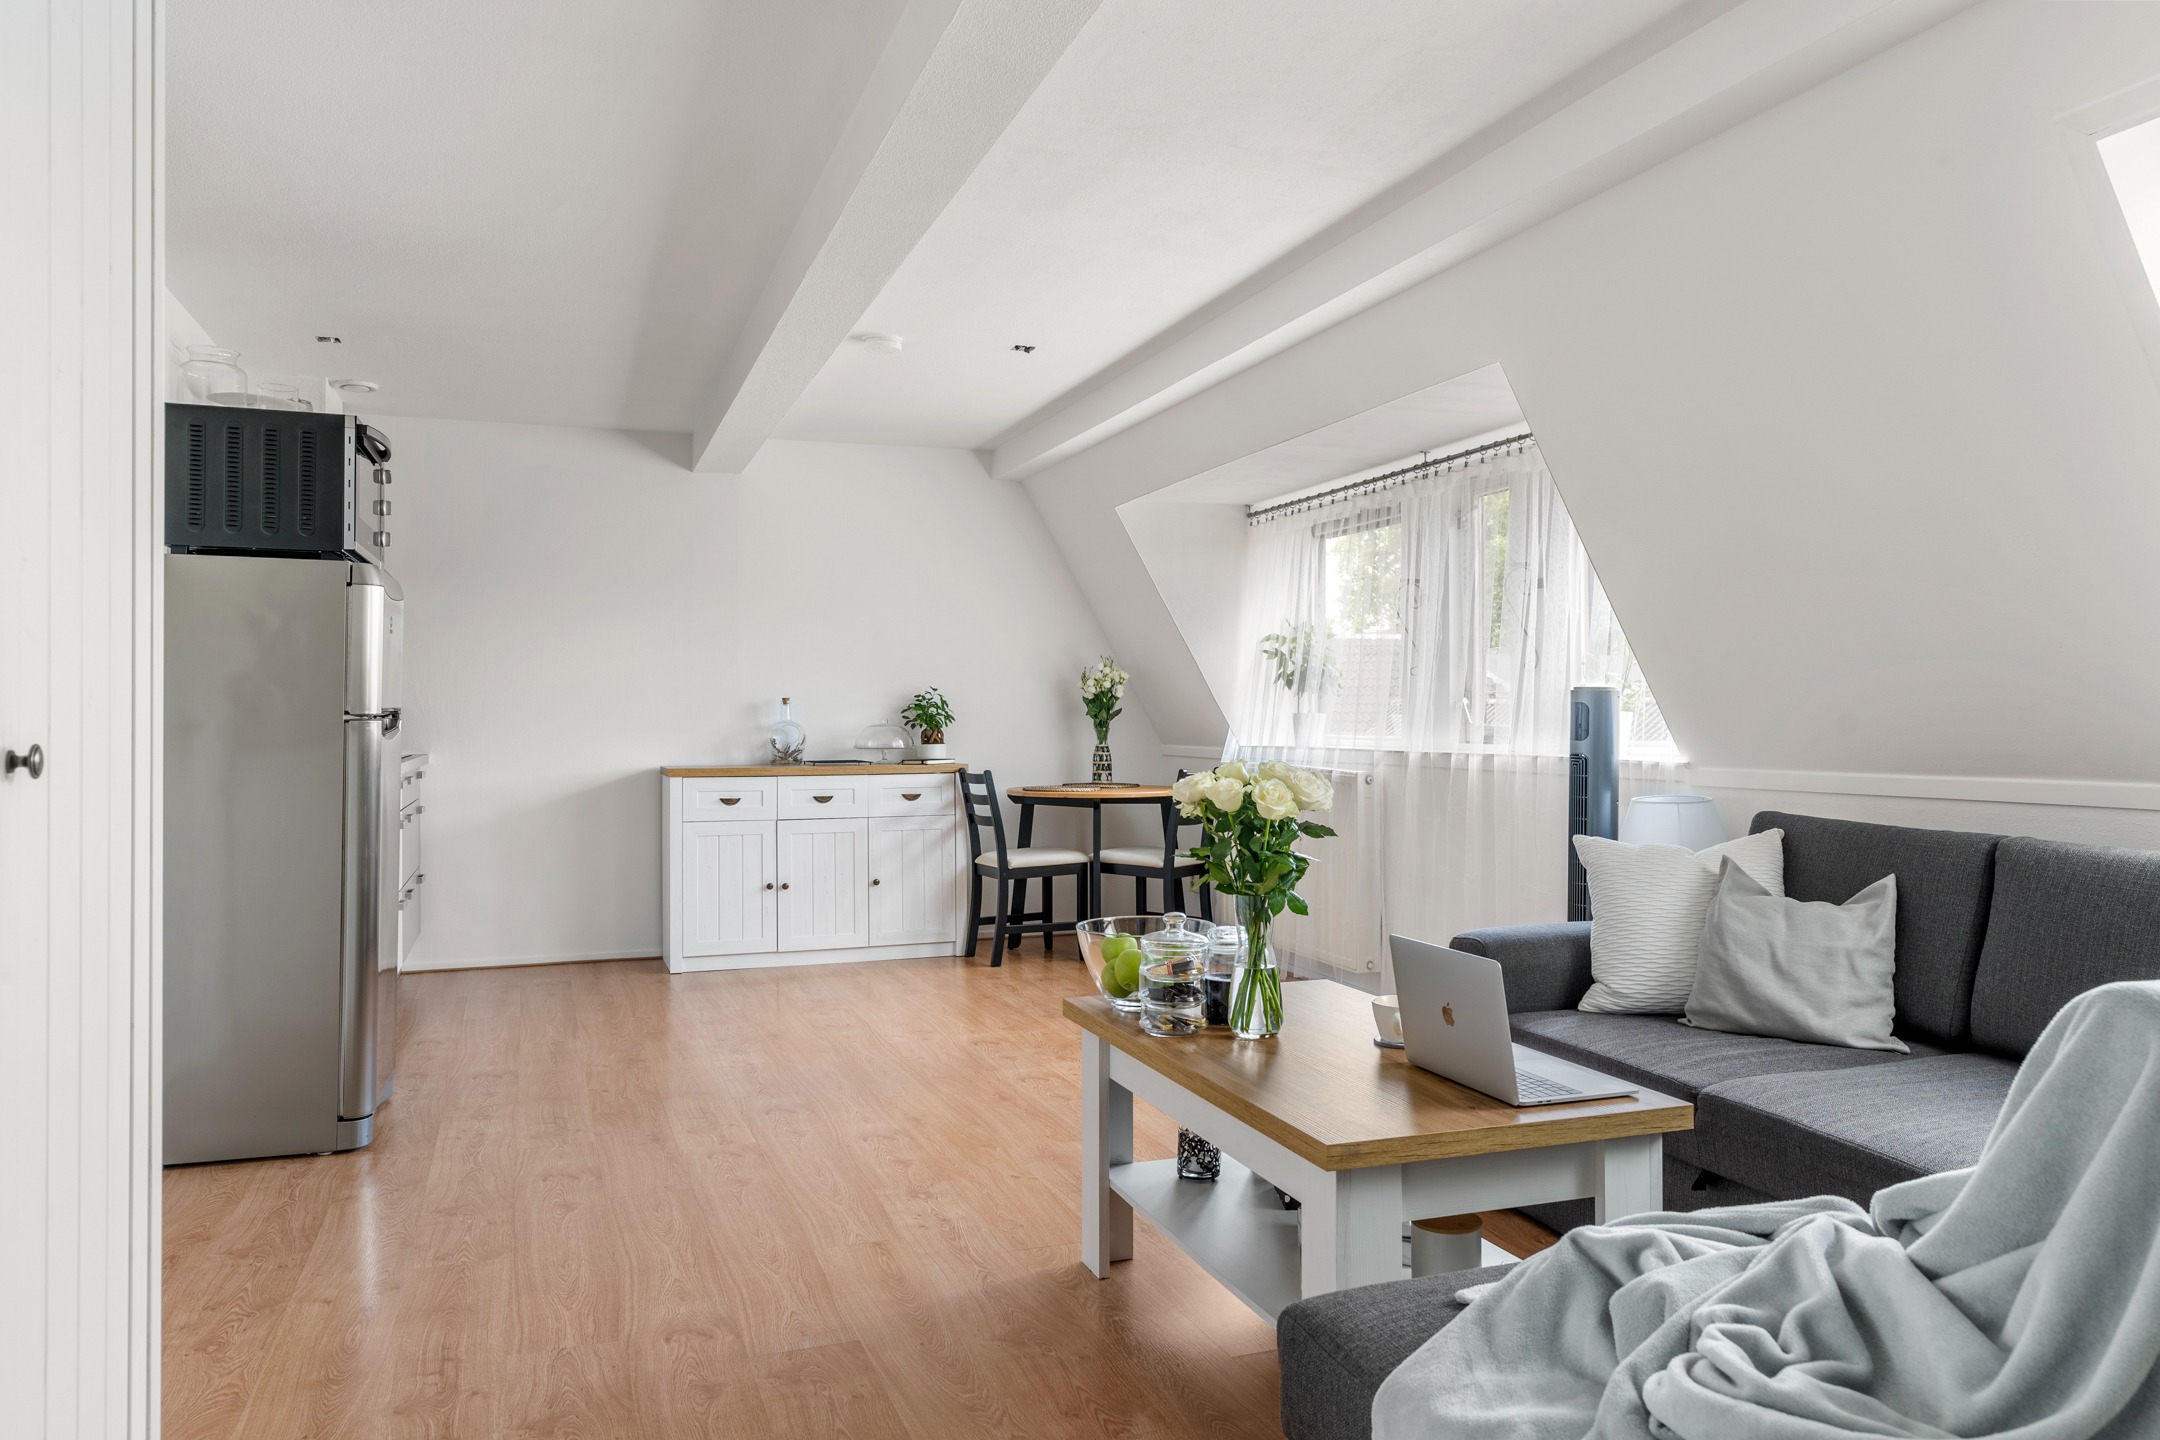 Woning / appartement - Ede - Molenstraat 110 11